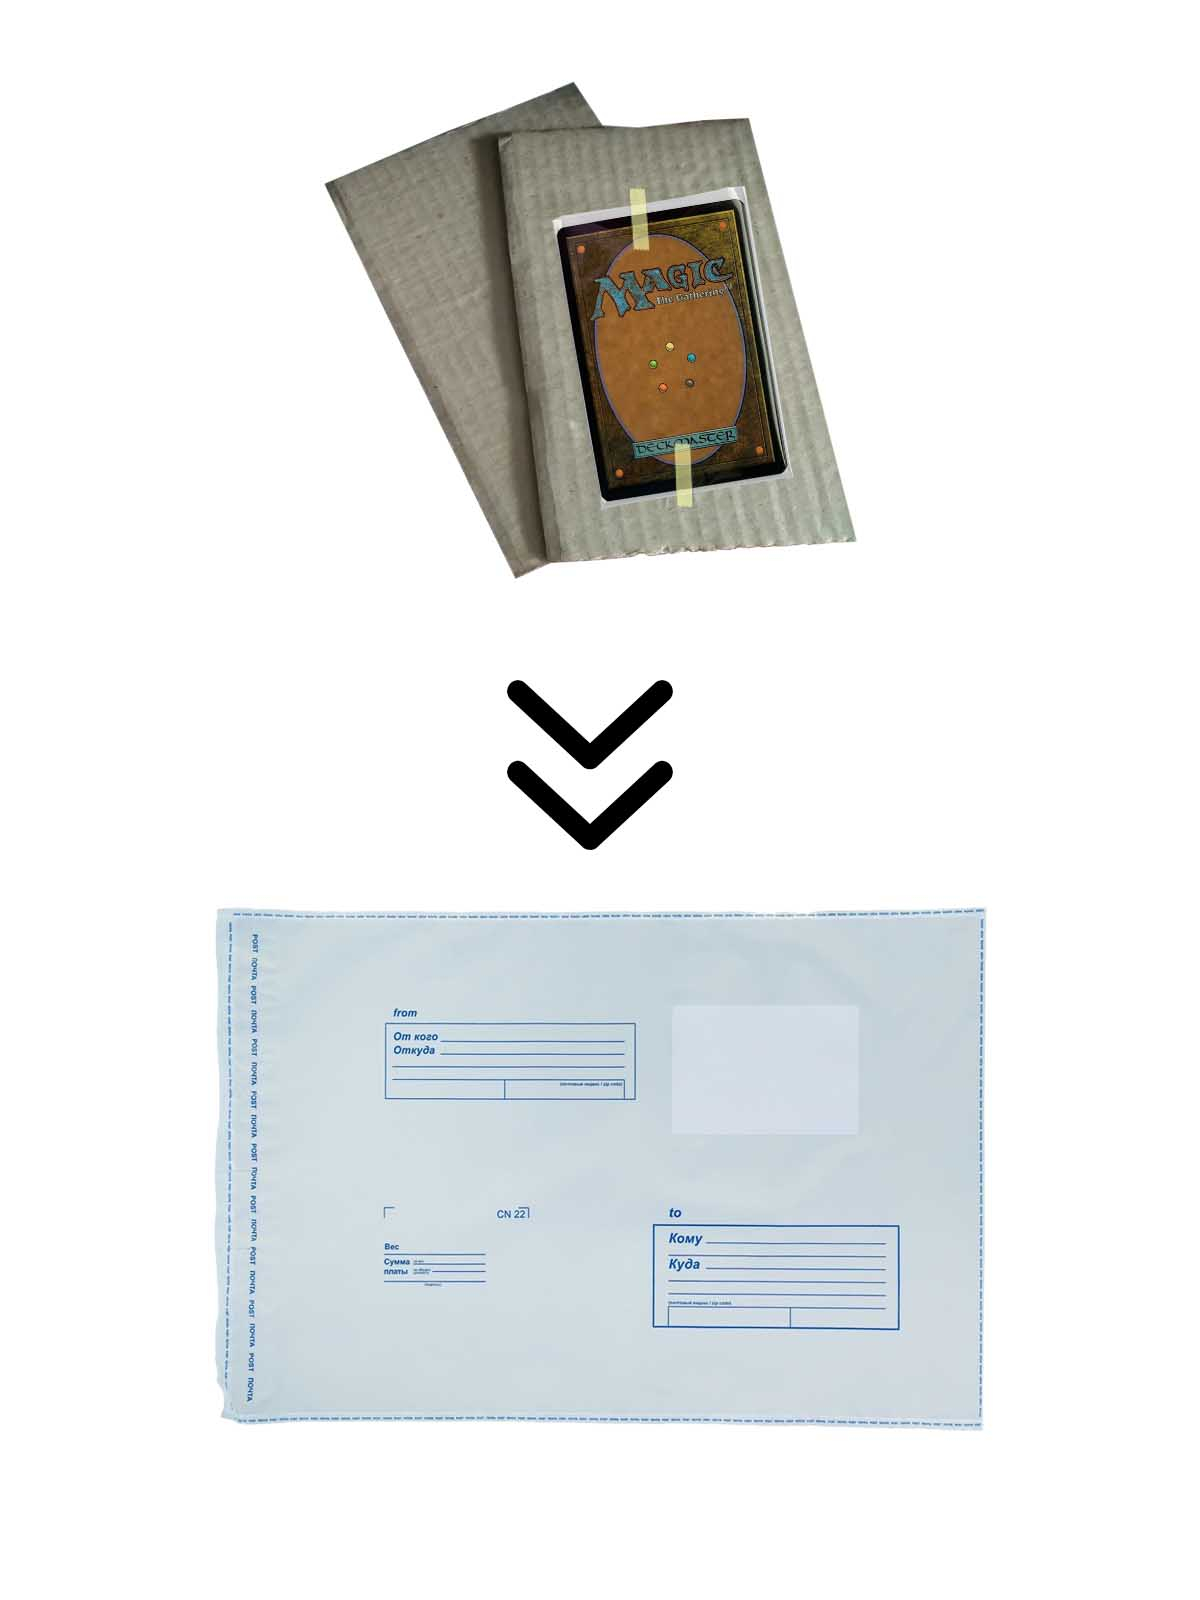 Как правильно упаковать карты MTG для отправки по почте - шаг 7-2